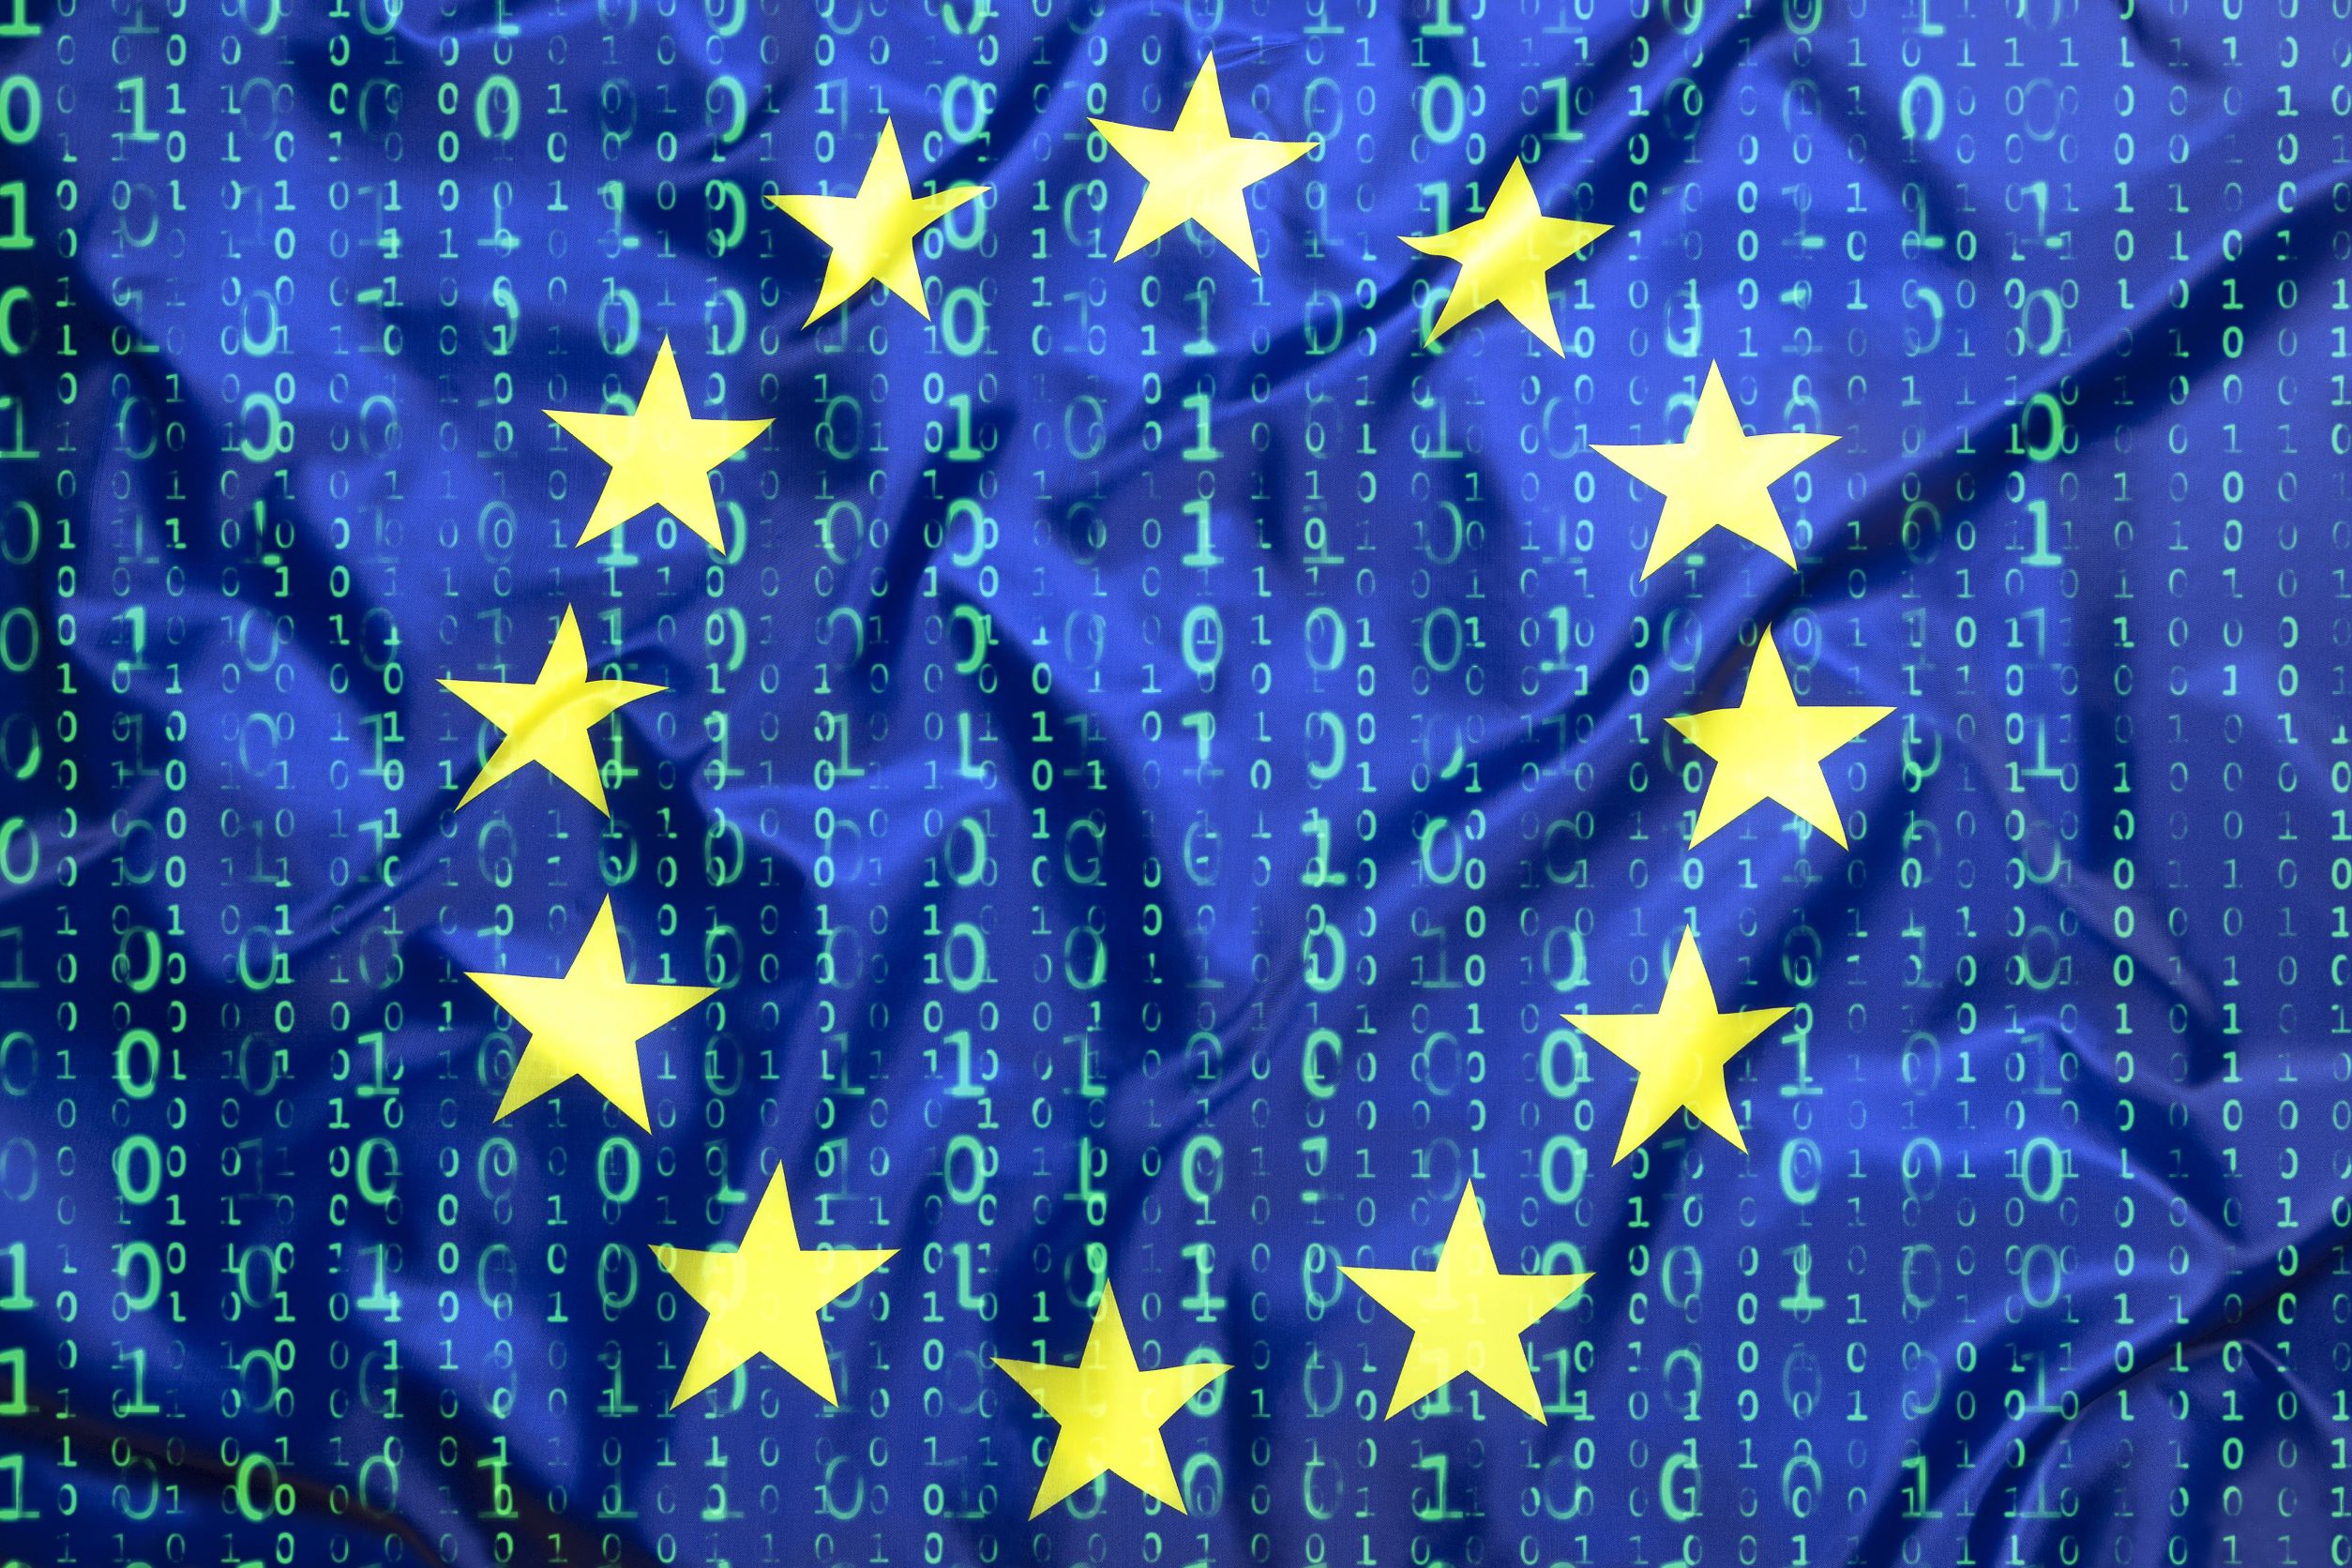 L’UE crée des normes techniques d’exclusion dans une offre protectionniste pour la cybersouveraineté, selon un nouveau rapport